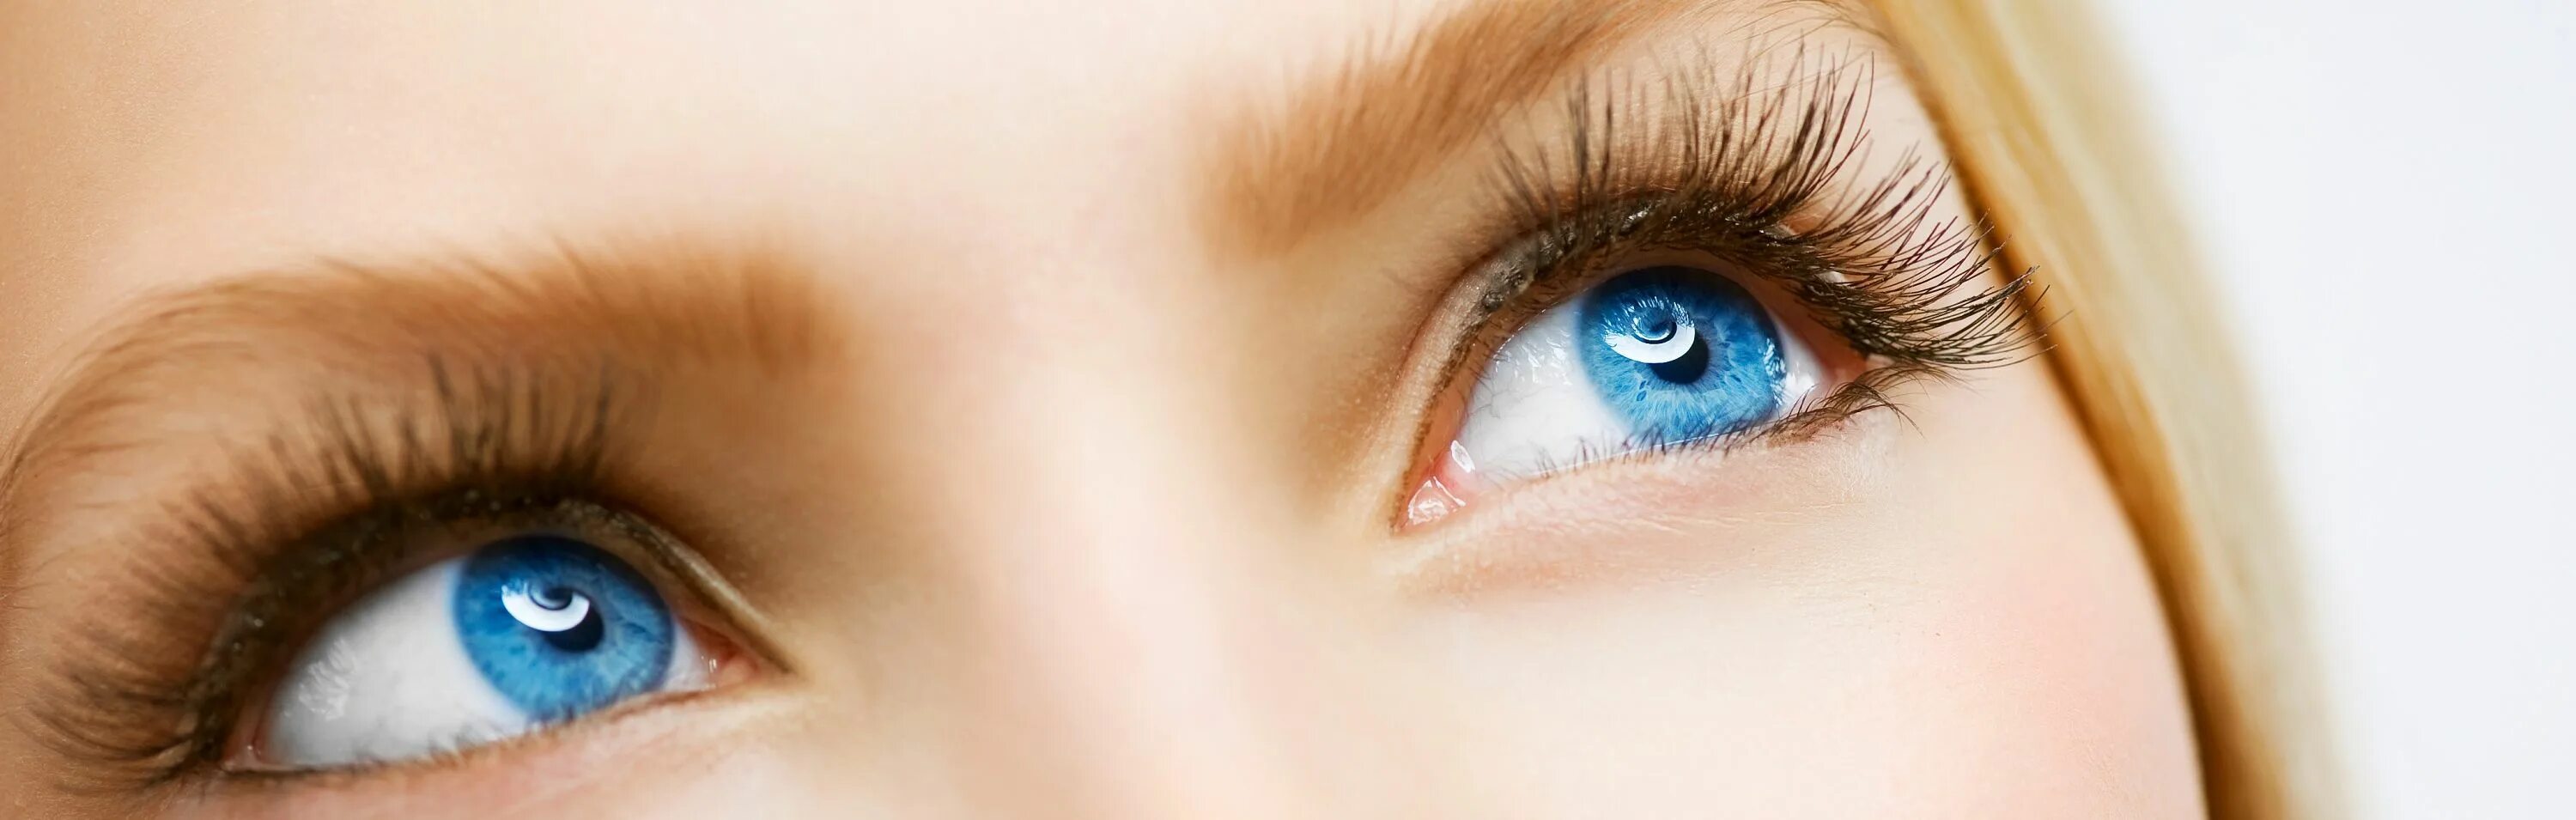 Голубые глаза с длинными ресницами. Голубые глаза женские. Небесно голубые глаза. Здоровый глаз красивый голубой.